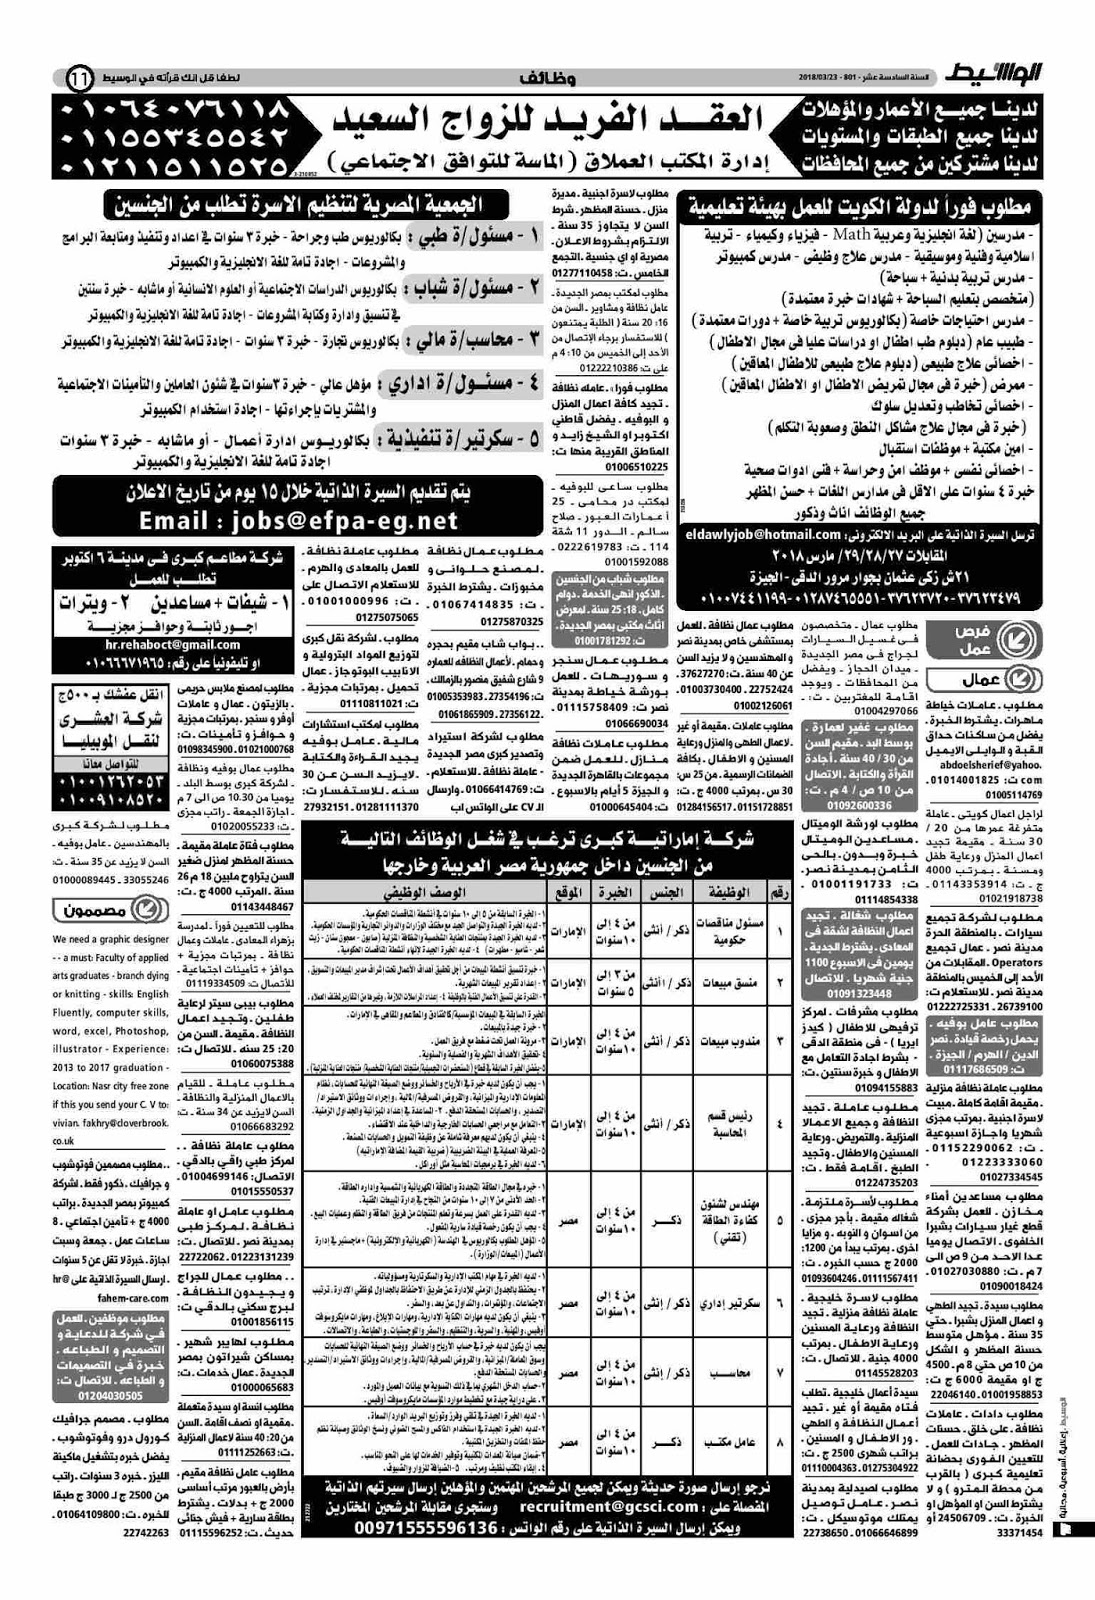 وظائف الوسيط مصر الجمعة 23 مارس 2018 واعلانات الوسيط